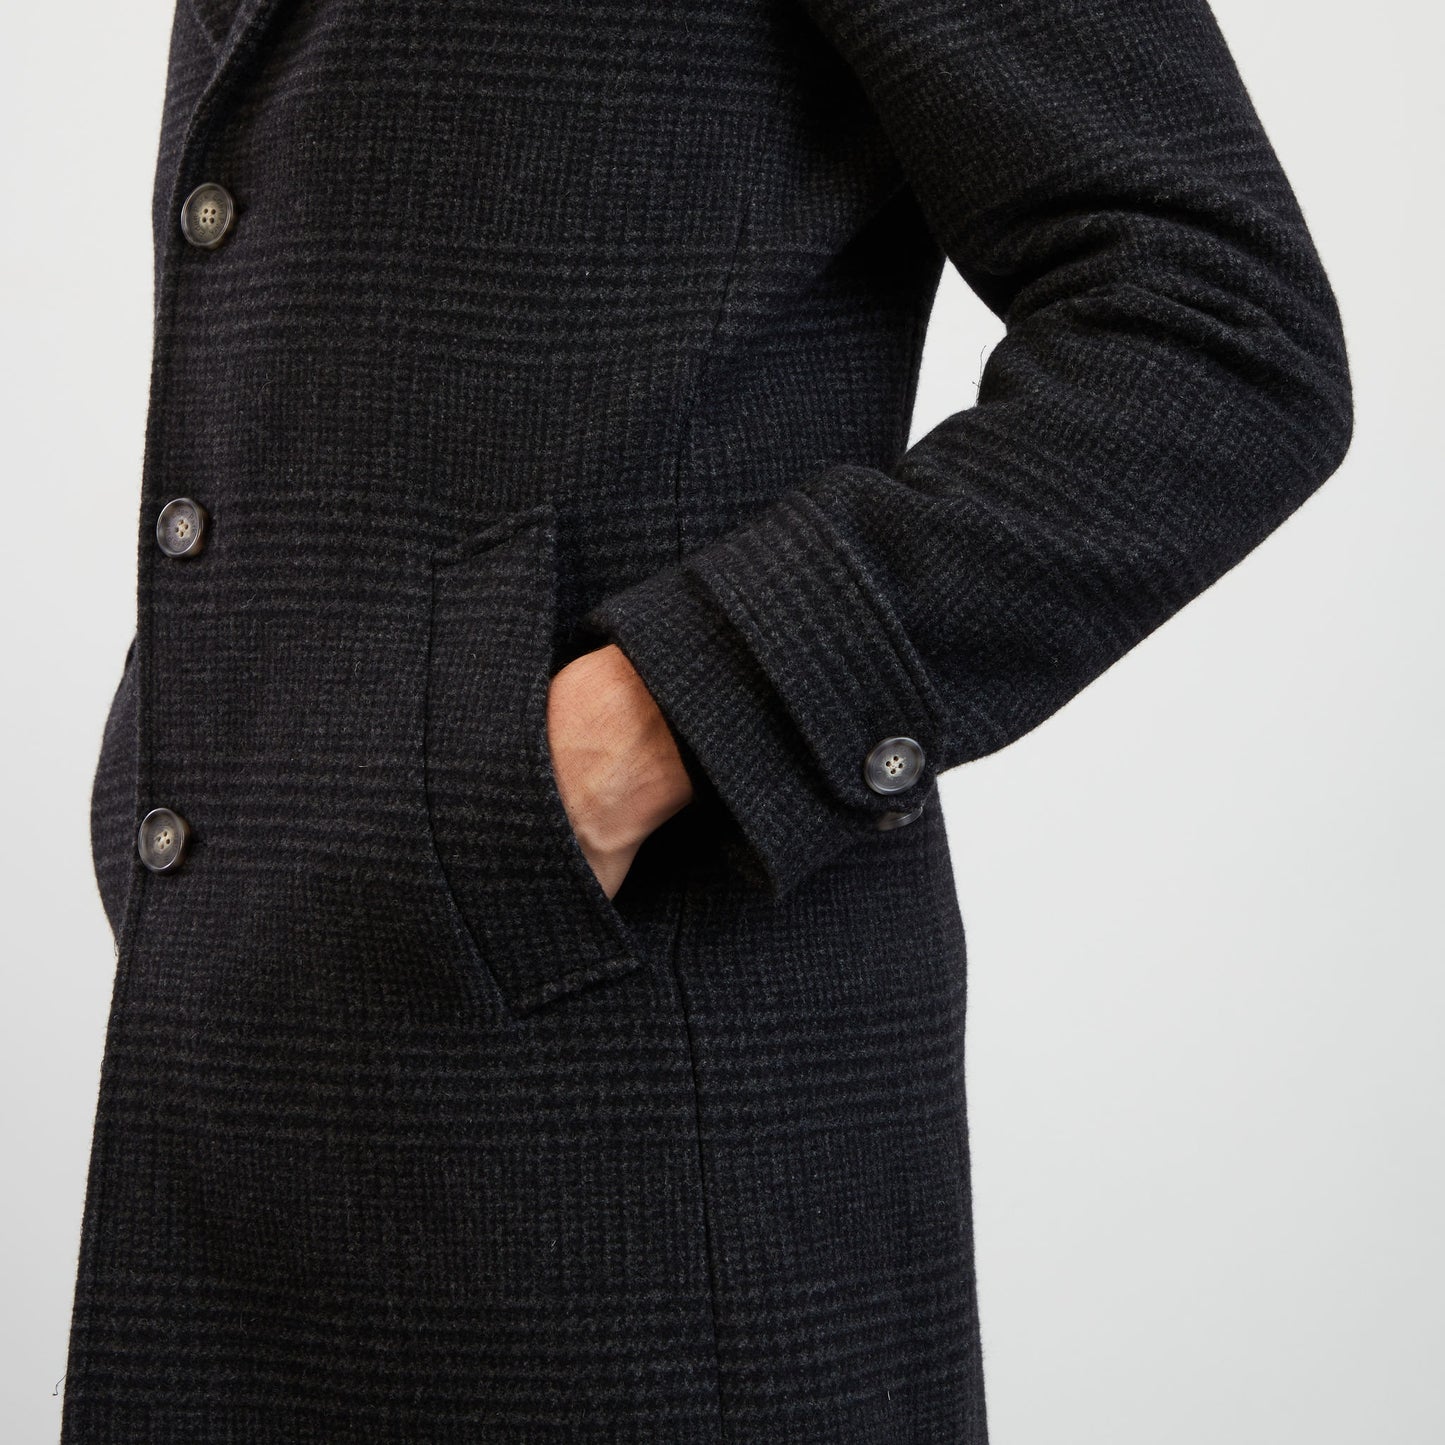 Manteau gris foncé motif prince-de-galles à parmenture amovible